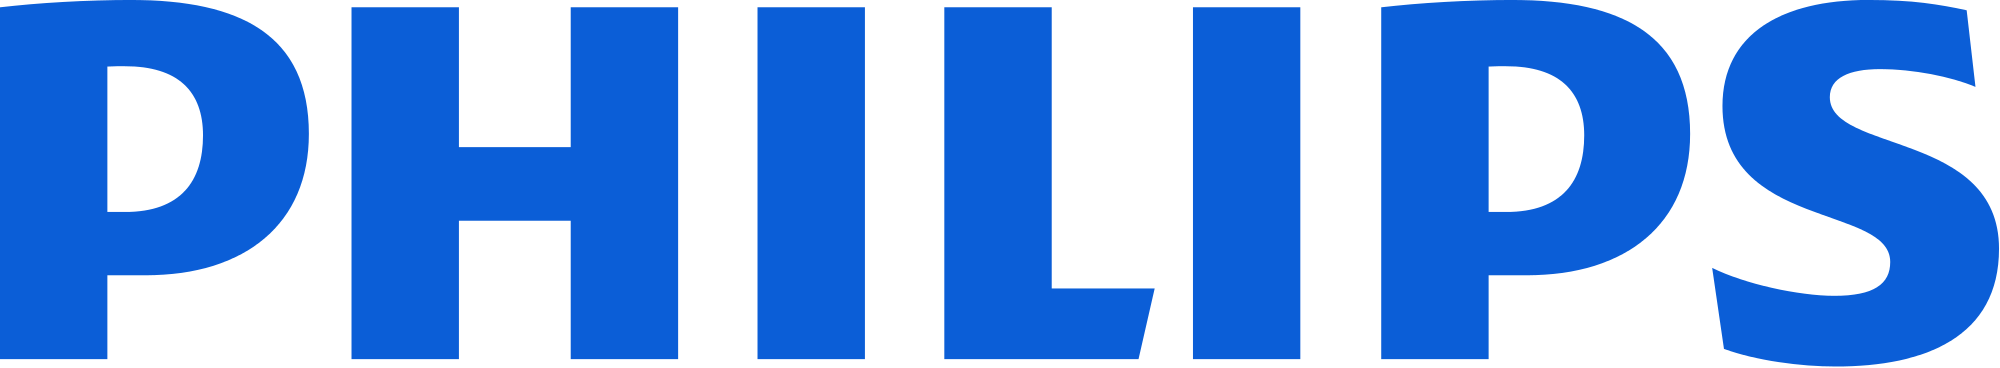 Philips Logo - Free Transparent PNG Logos